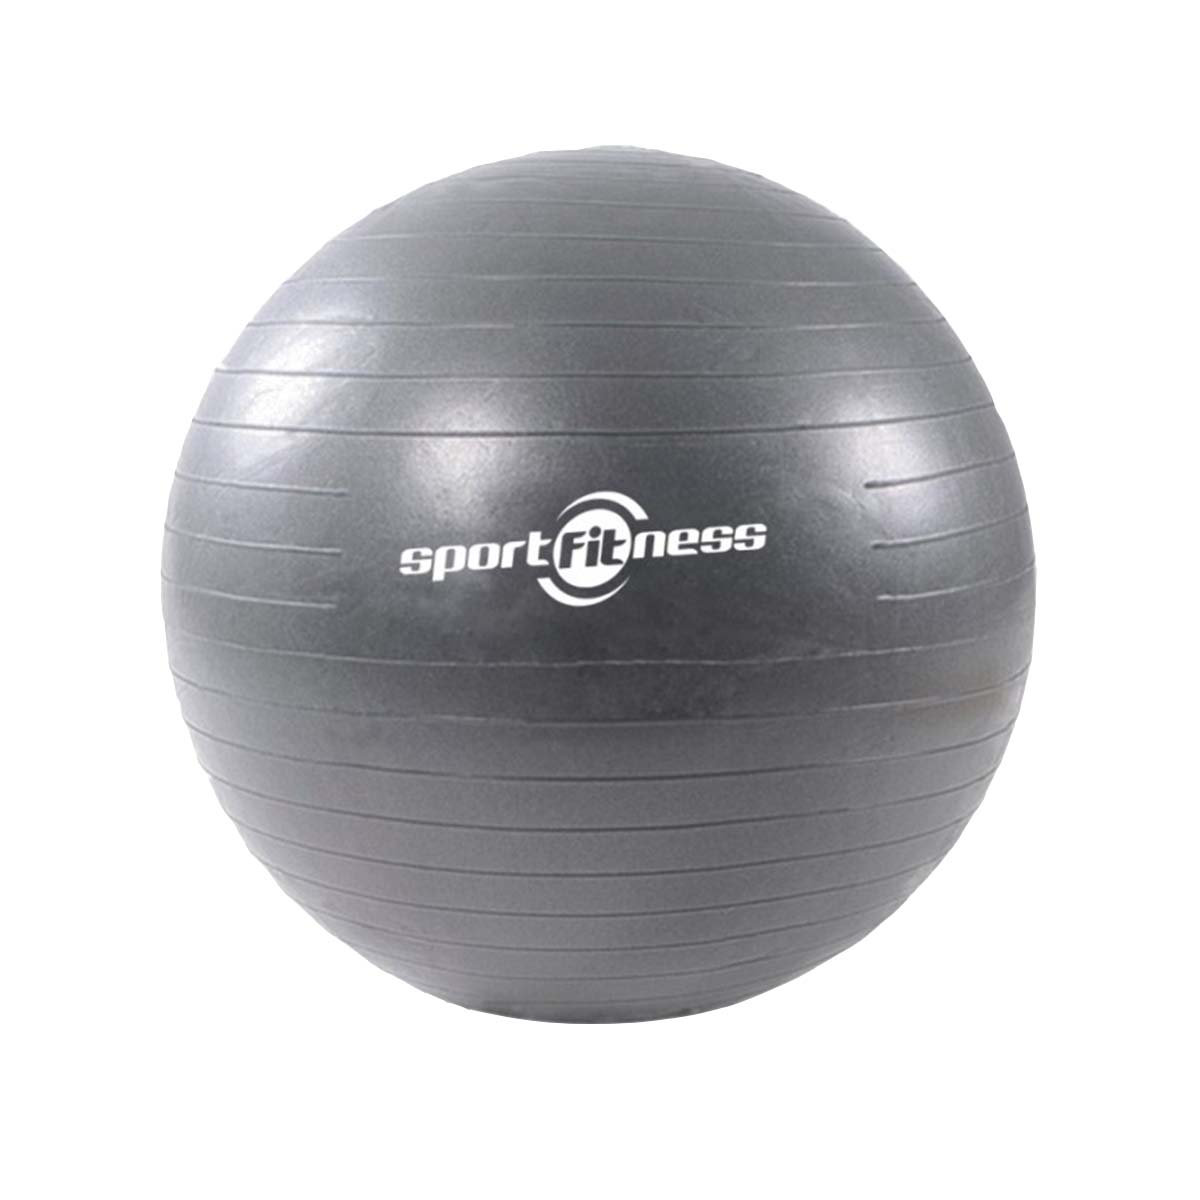 Pelota de Pilates Yoga Ball 65cm 